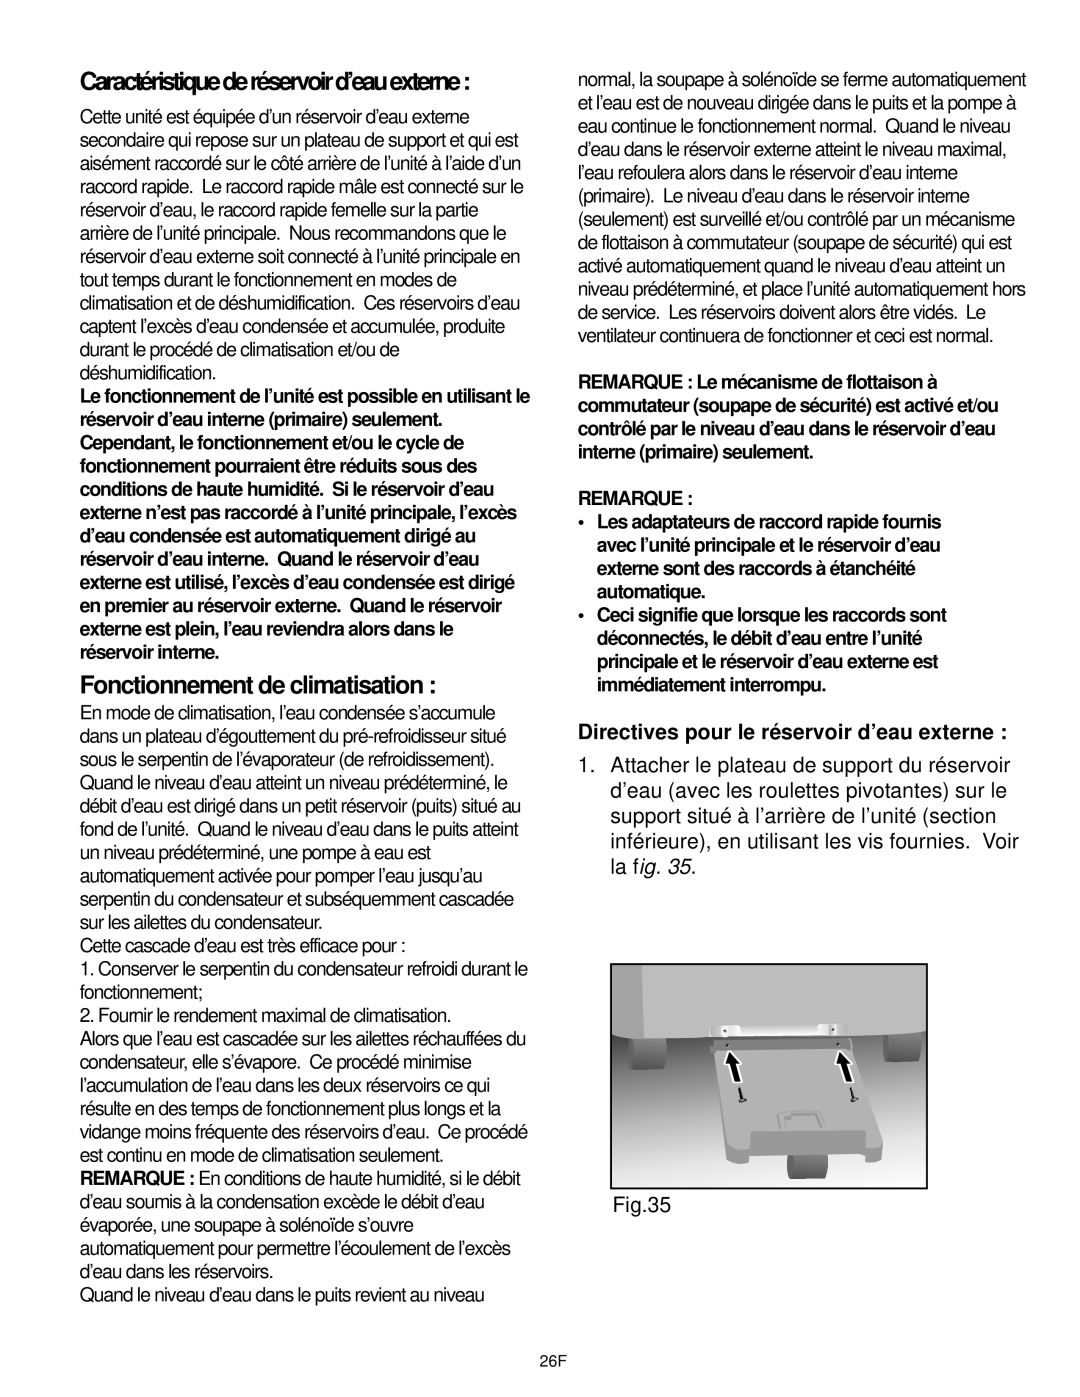 Danby DPAC10030 manual Fonctionnement de climatisation, Caractéristiquederéservoird’eauexterne, Remarque 